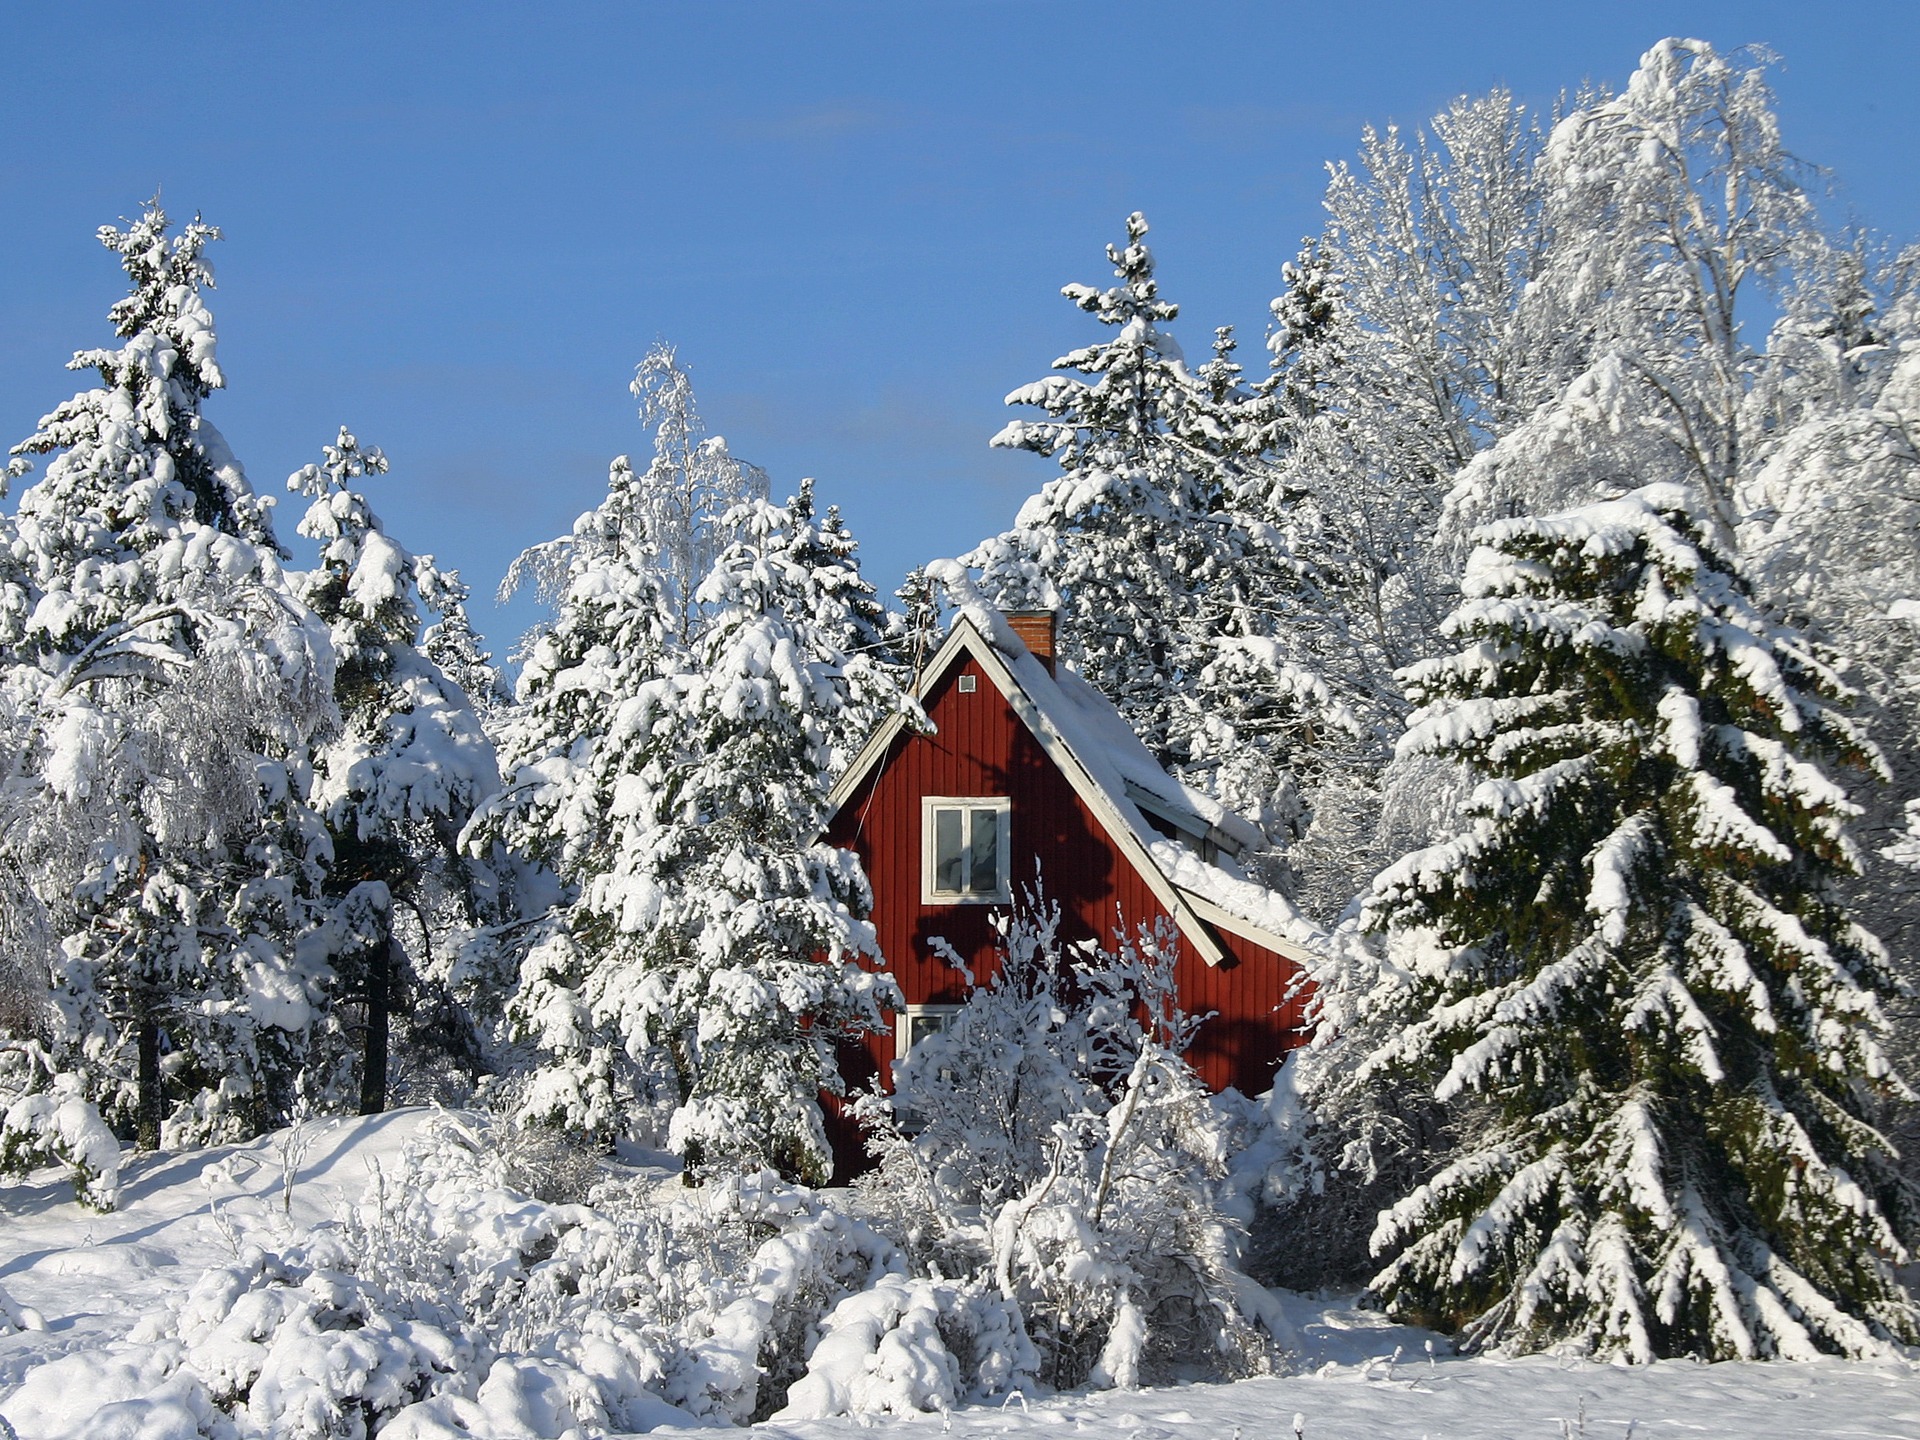 Winter in Sweden Wallpaper Winter Nature Wallpapers in jpg format